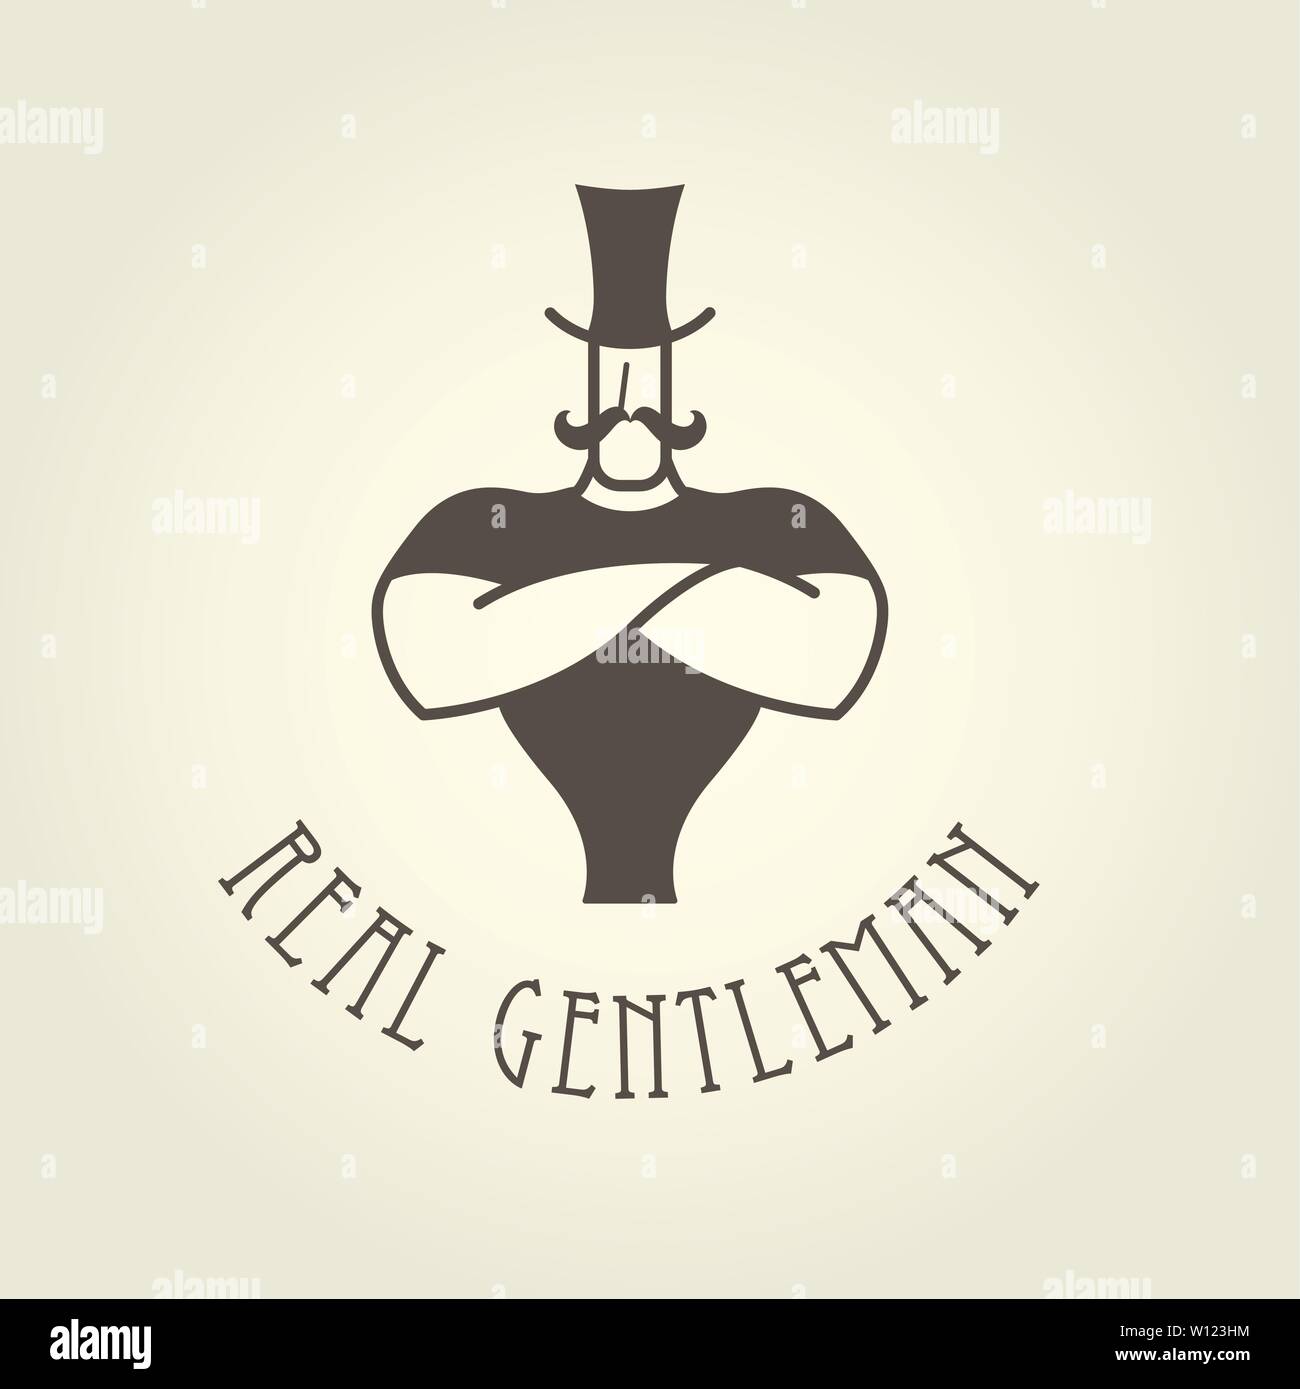 Poster di circo - uomo forte con le braccia incrociate sul petto e lo stile retrò gentleman o attore di circo Illustrazione Vettoriale